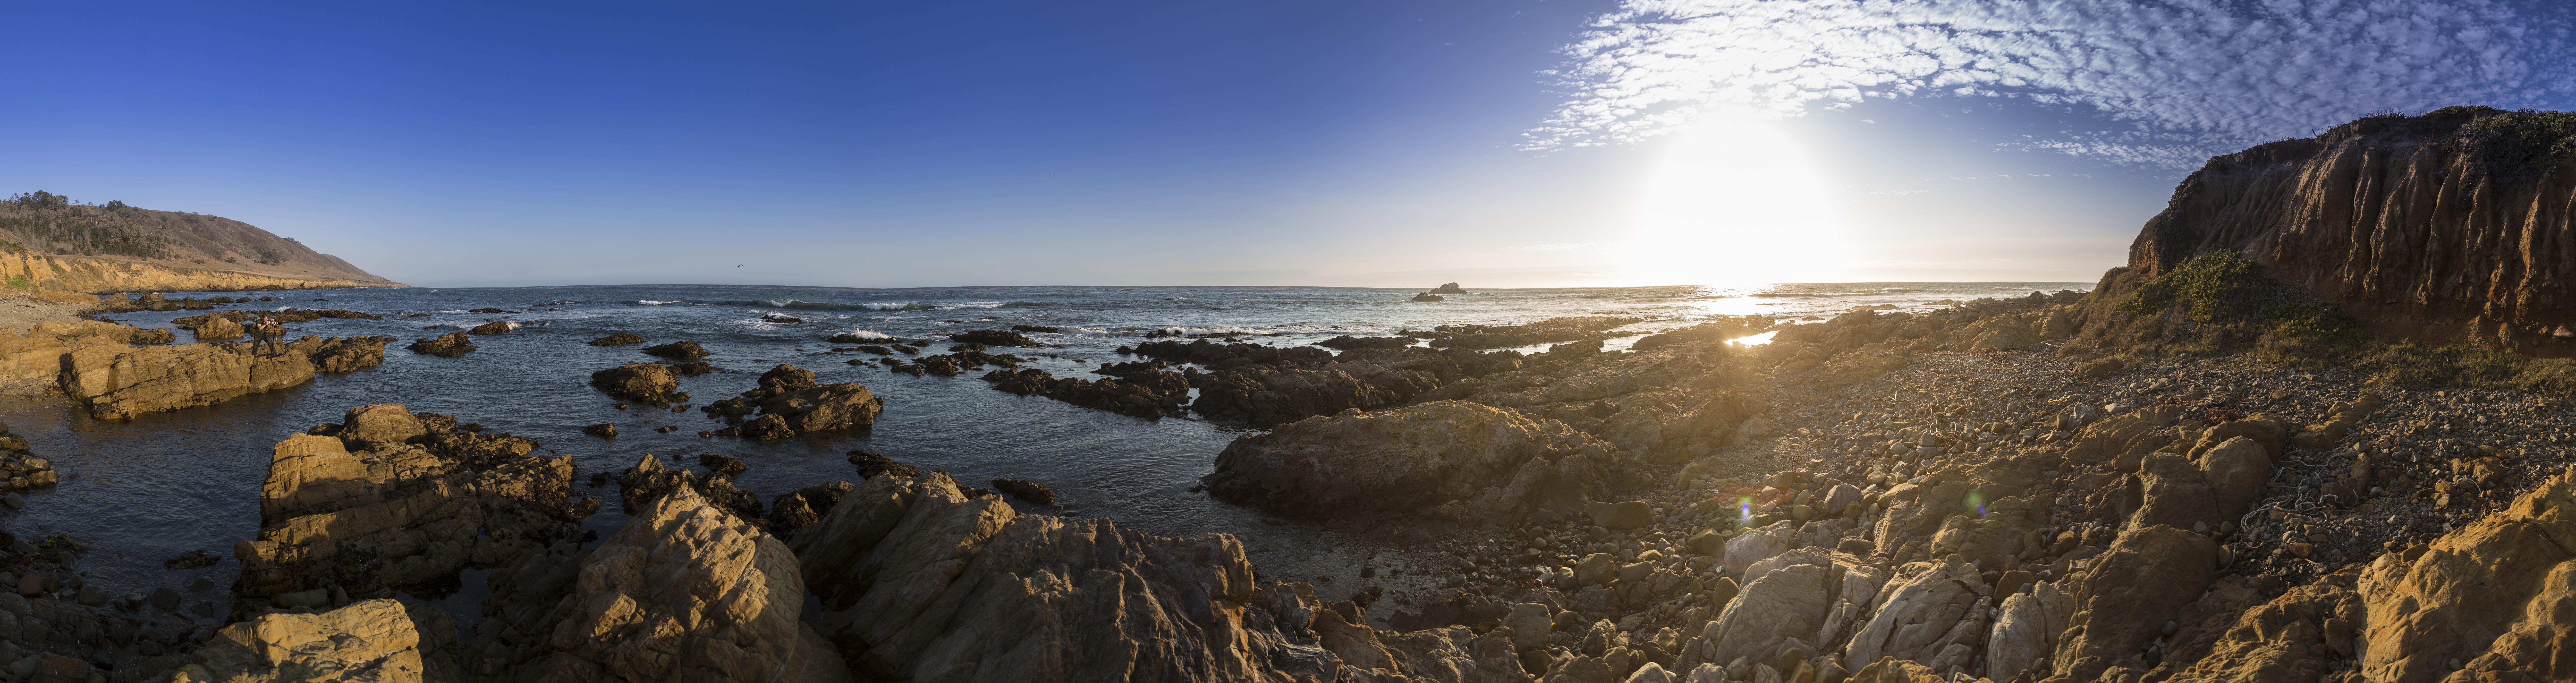 Panorama of a rugged California coastline